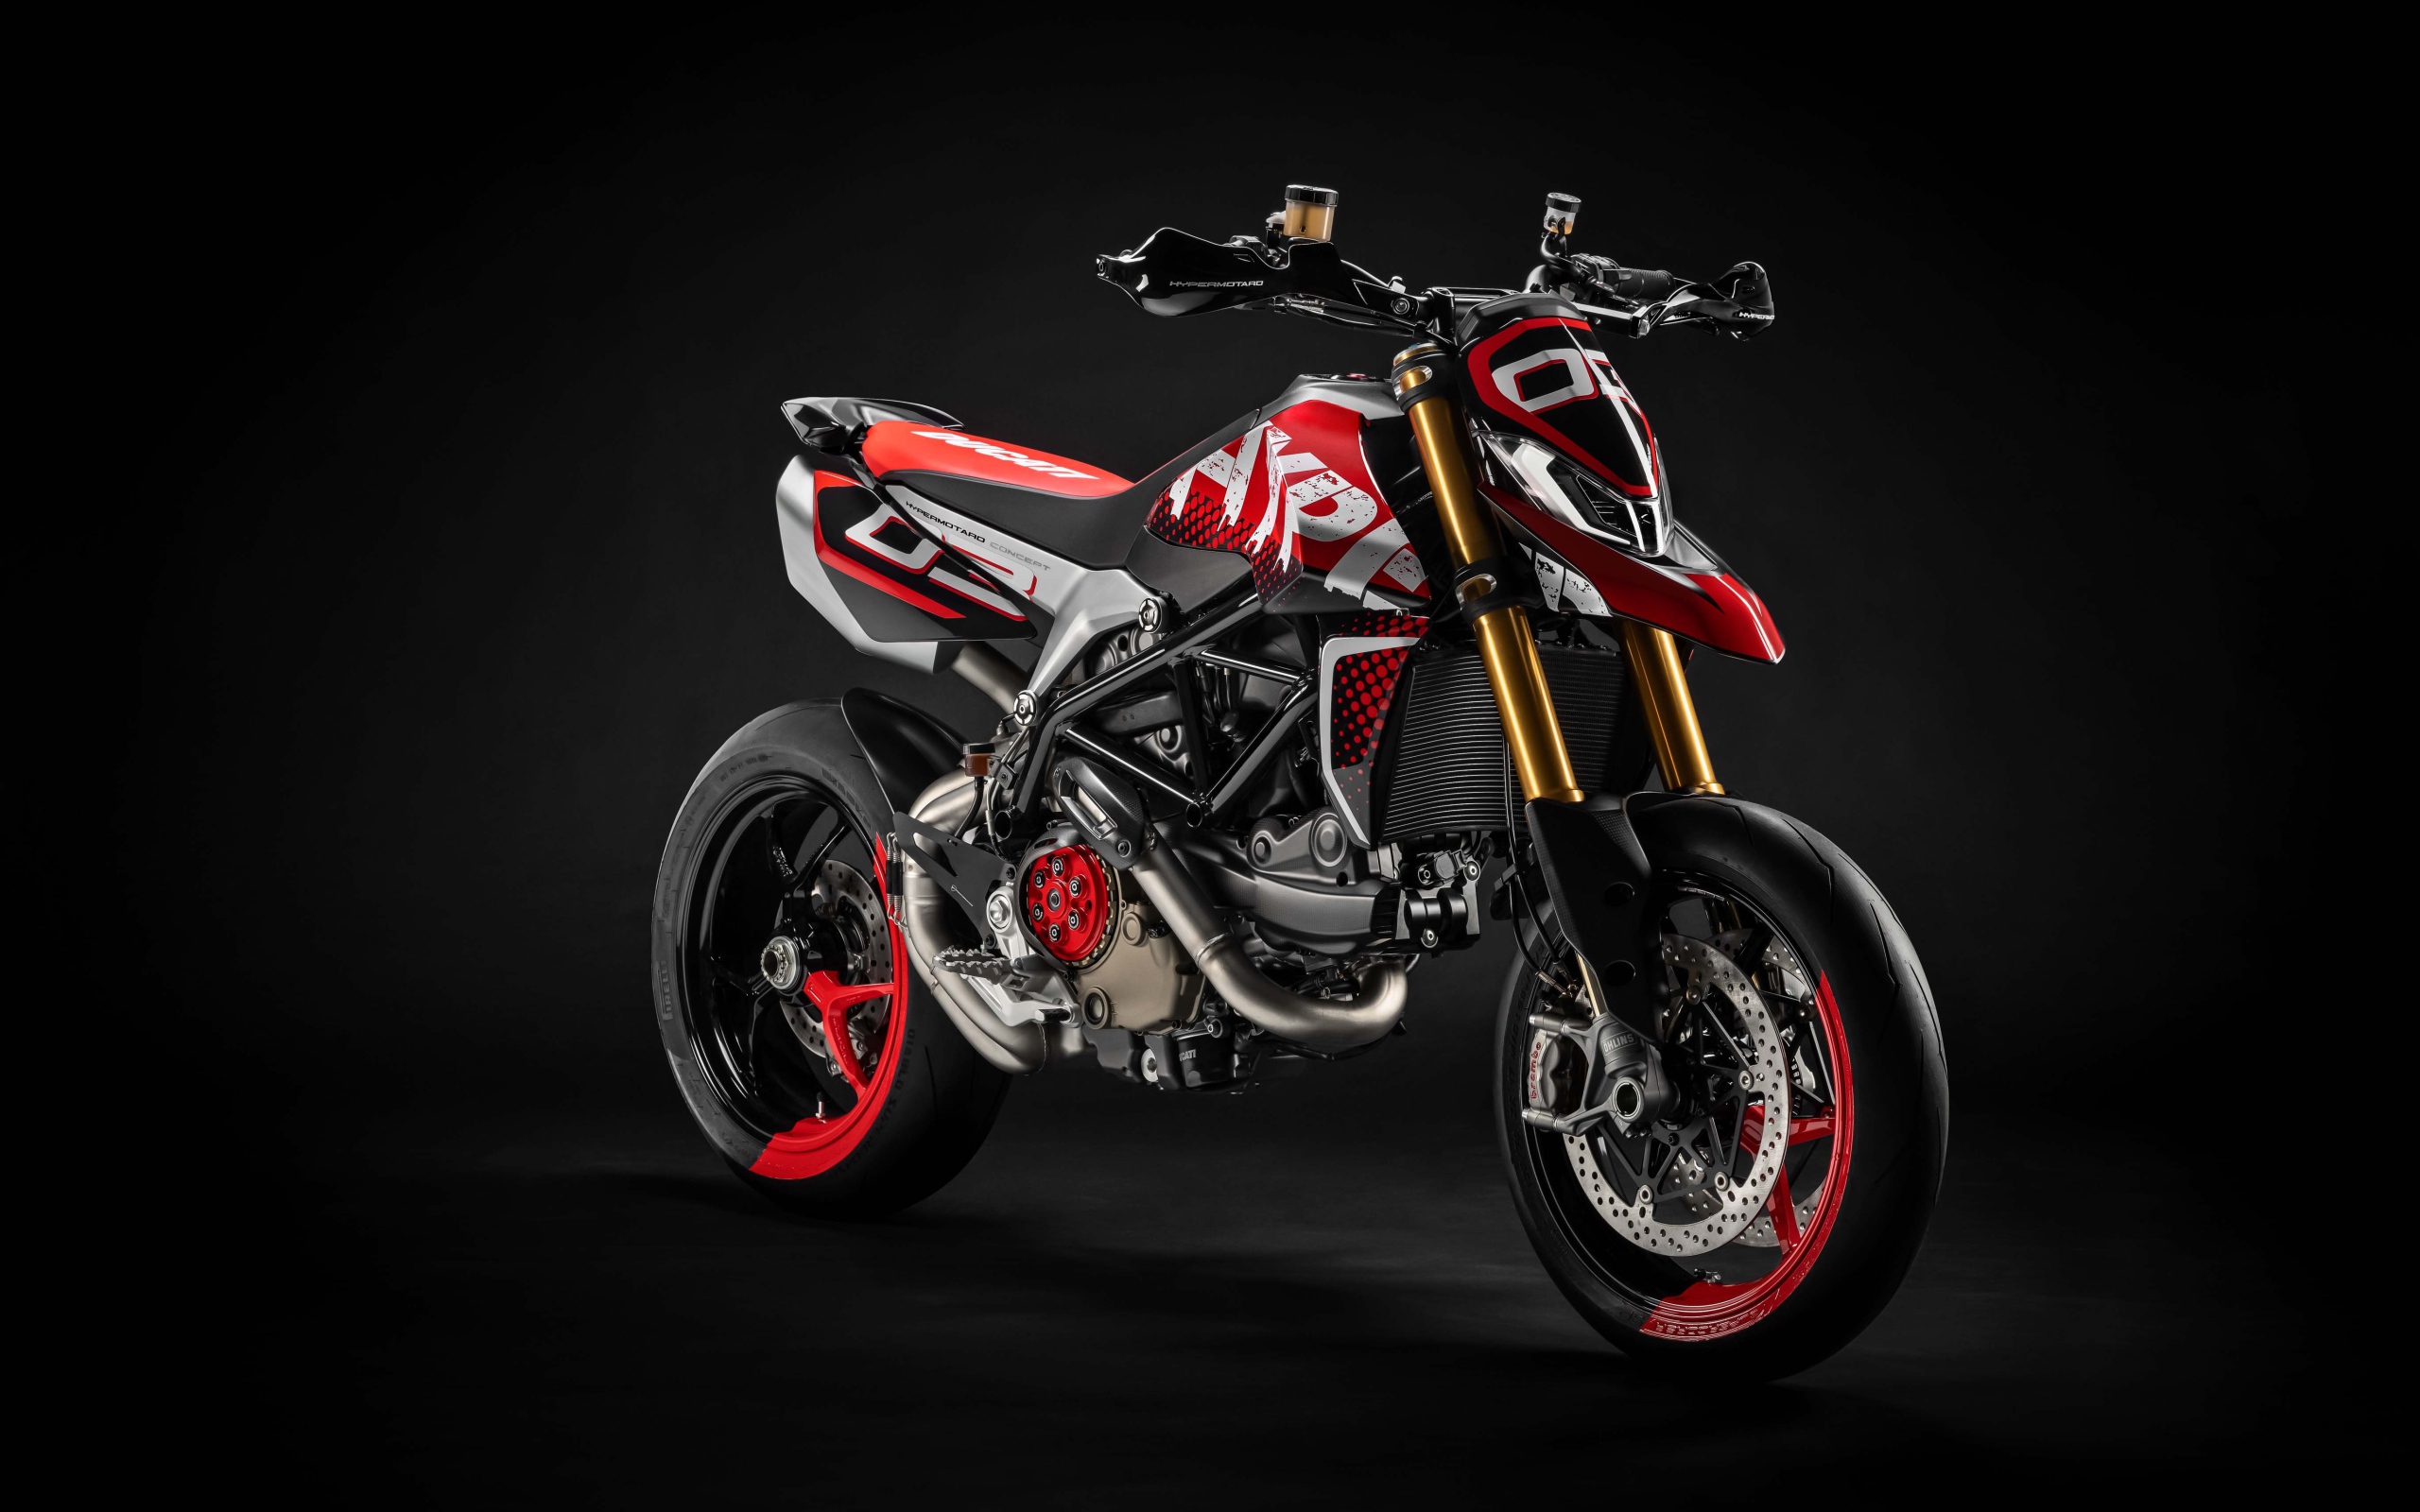 Мотоцикл Ducati Hypermotard 950 на сером фоне